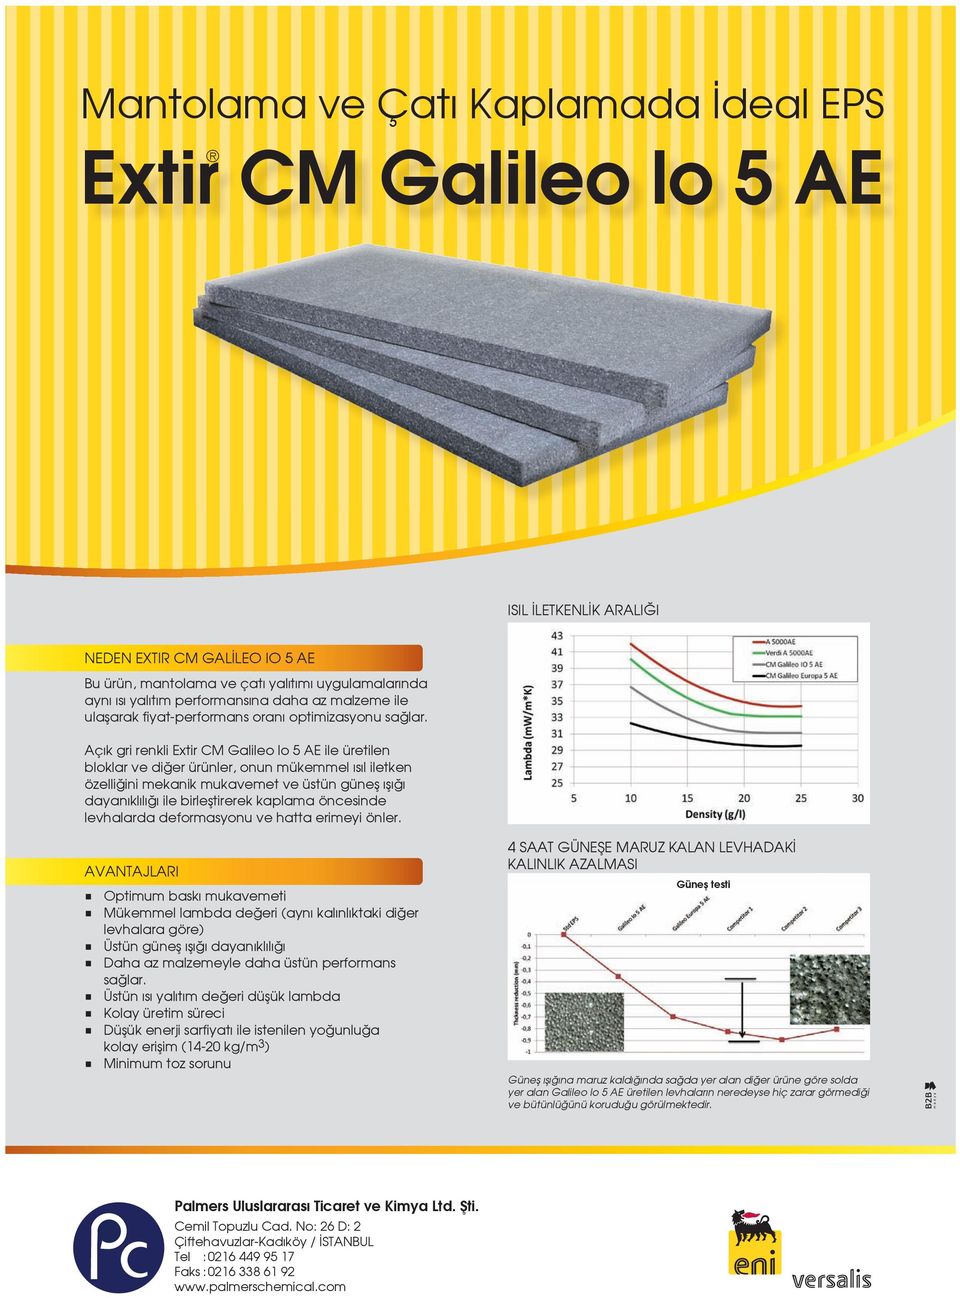 Açık gri renkli Extir CM Galileo lo 5 AE ile üretilen bloklar ve diğer ürünler, onun mükemmel ısıl iletken özelliğini mekanik mukavemet ve üstün güneş ışığı dayanıklılığı ile birleştirerek kaplama